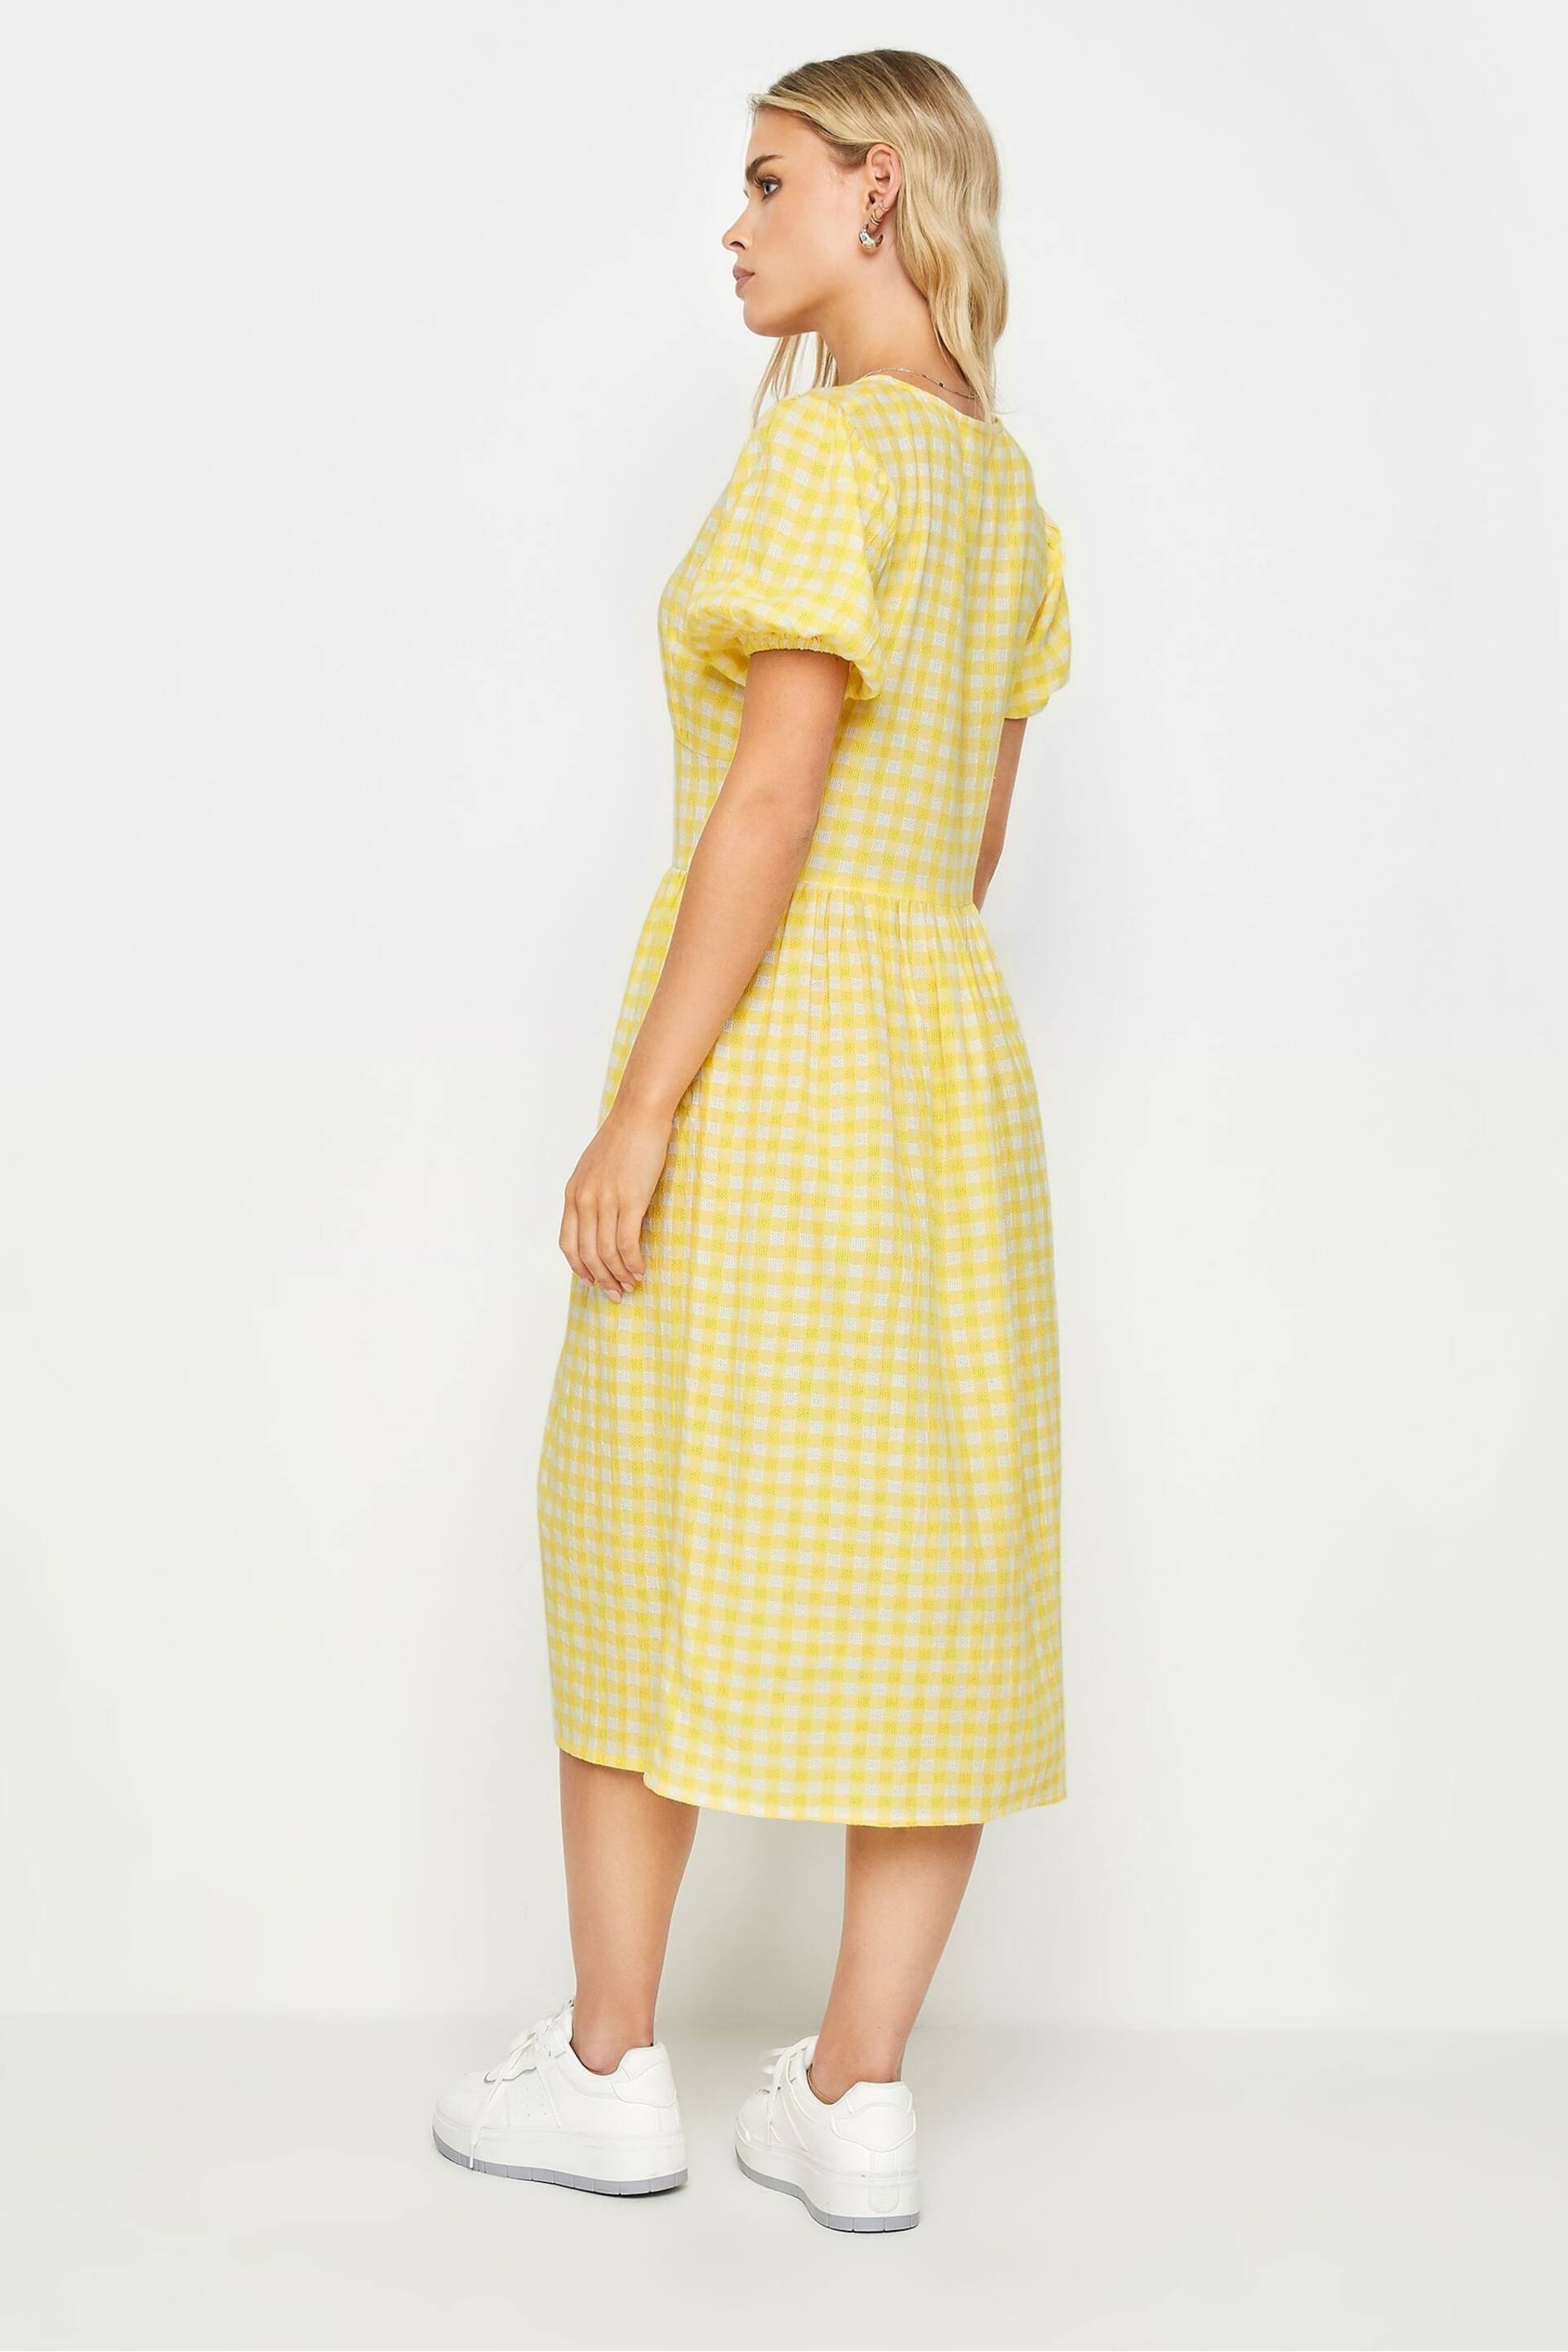 PixieGirl Petite Yellow Yellow Gingham Print Button Through Midi Dress - Image 3 of 5